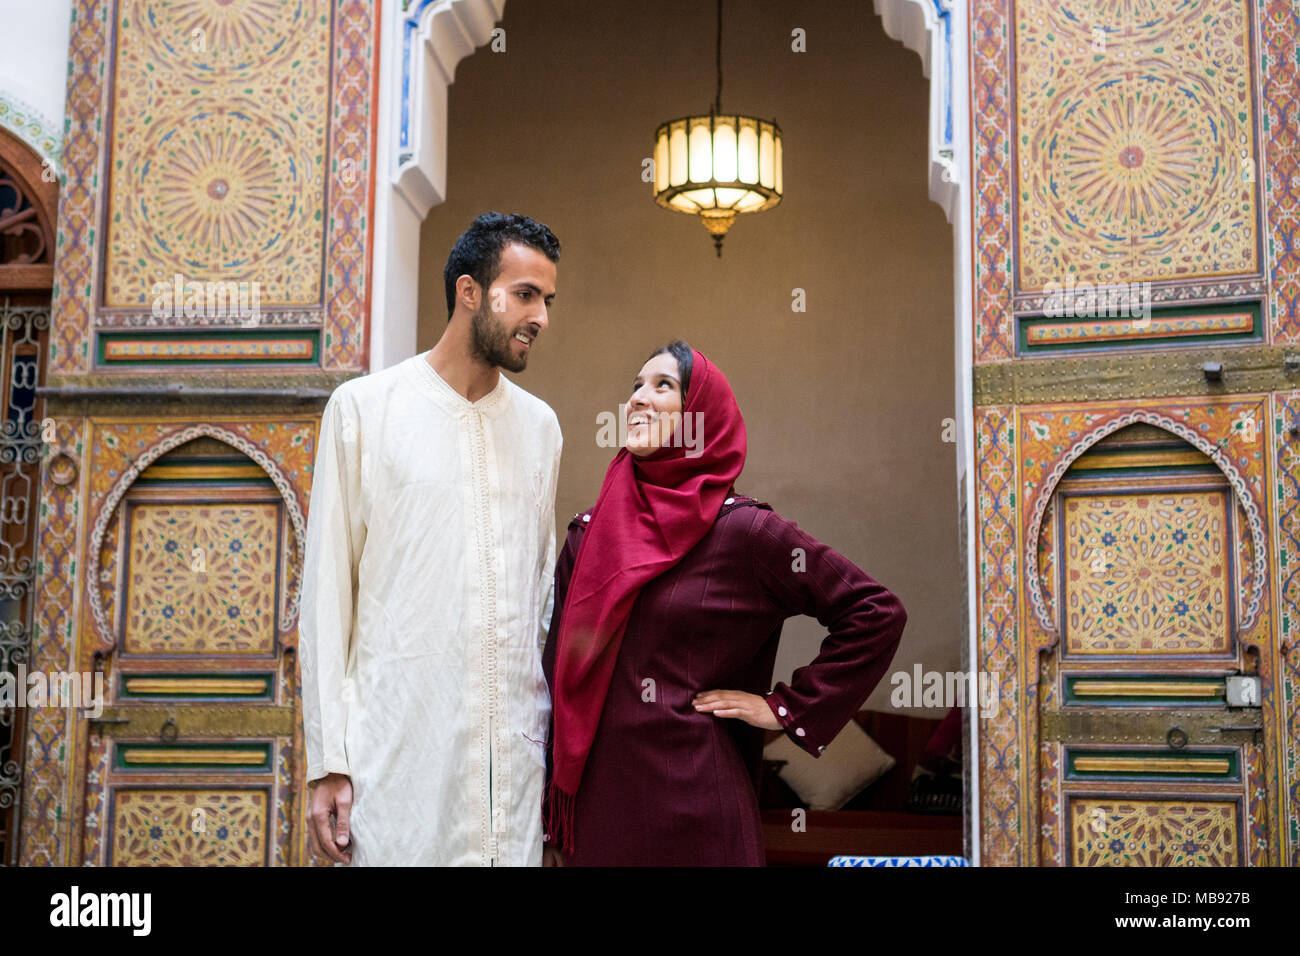 Junge muslimische Paare in Beziehung reden und lächeln im traditionellen marokkanischen Riad Haus Stockfoto